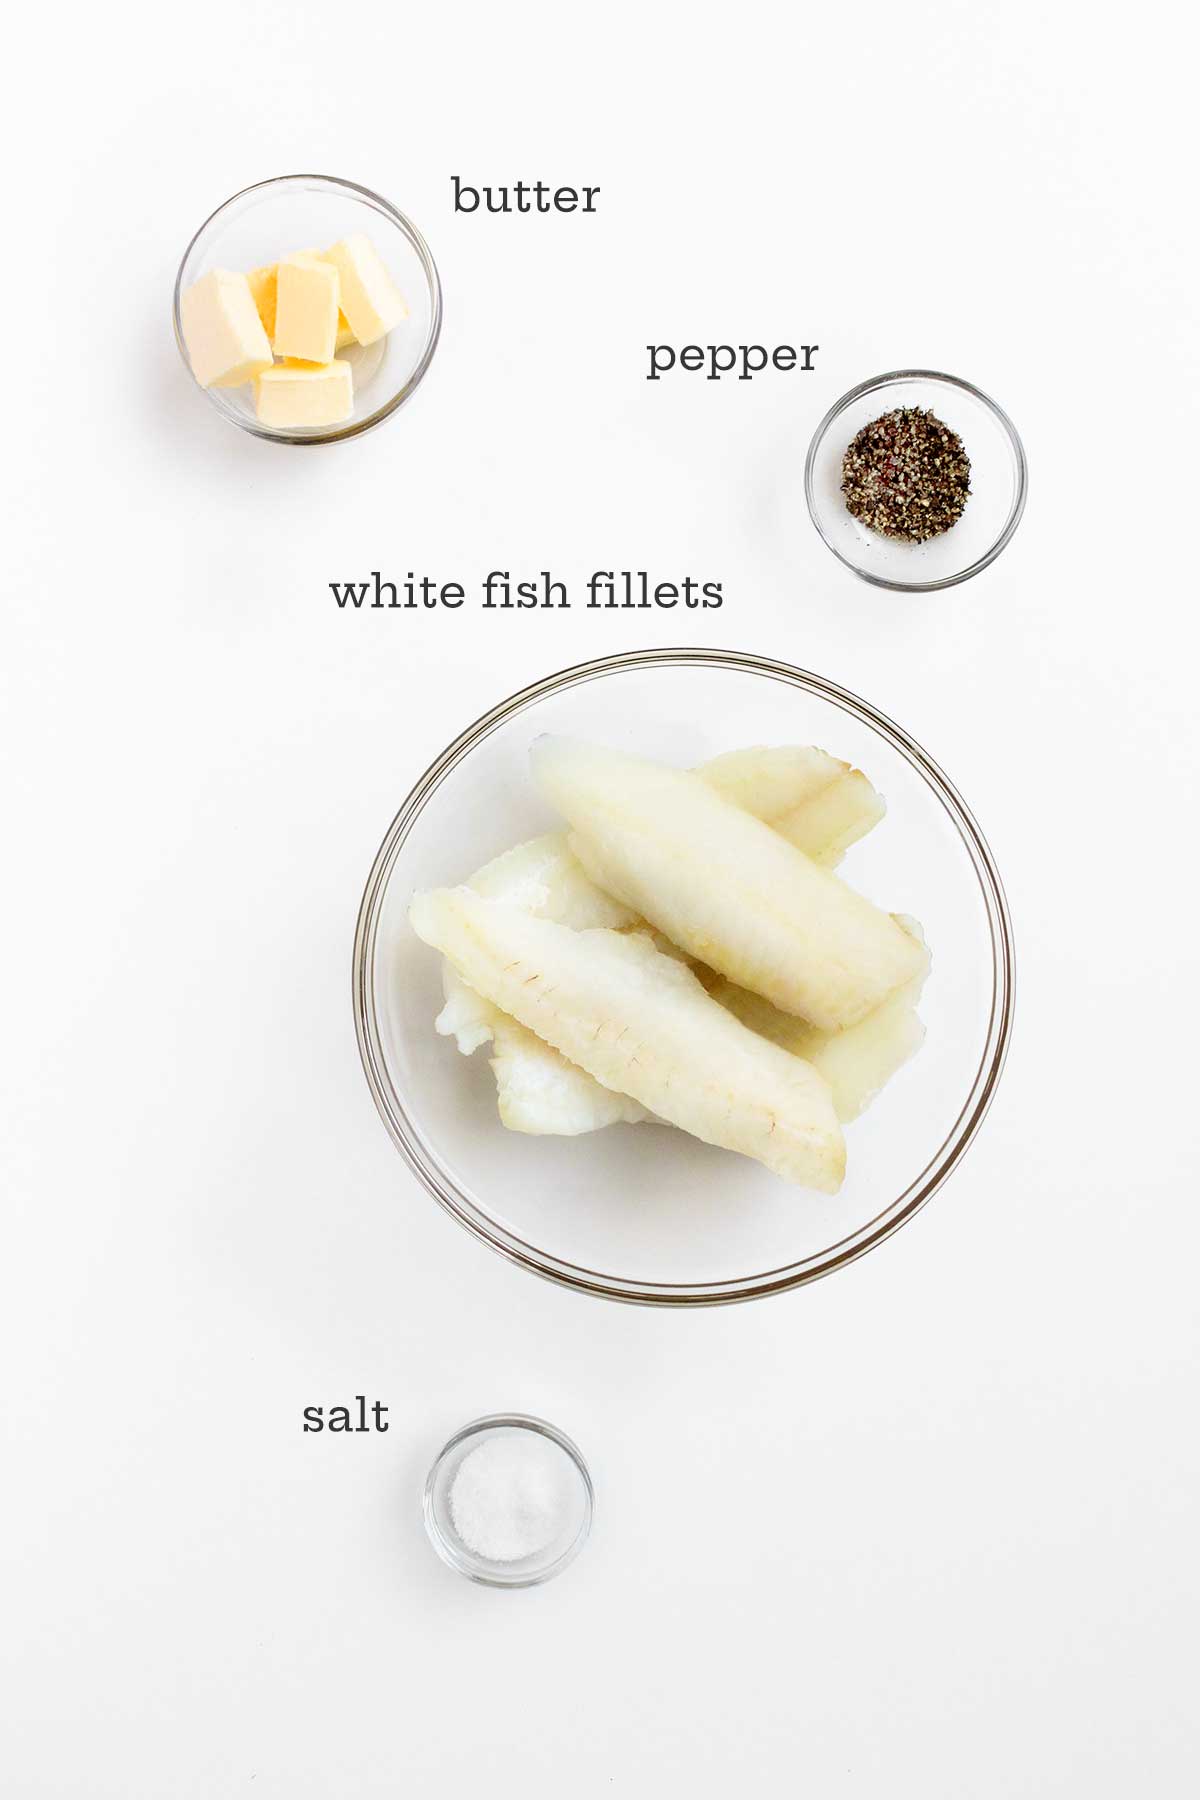 Ingredienserna för smörbakad fisk i glasskålar - smör, peppar, fiskfiléer och salt.